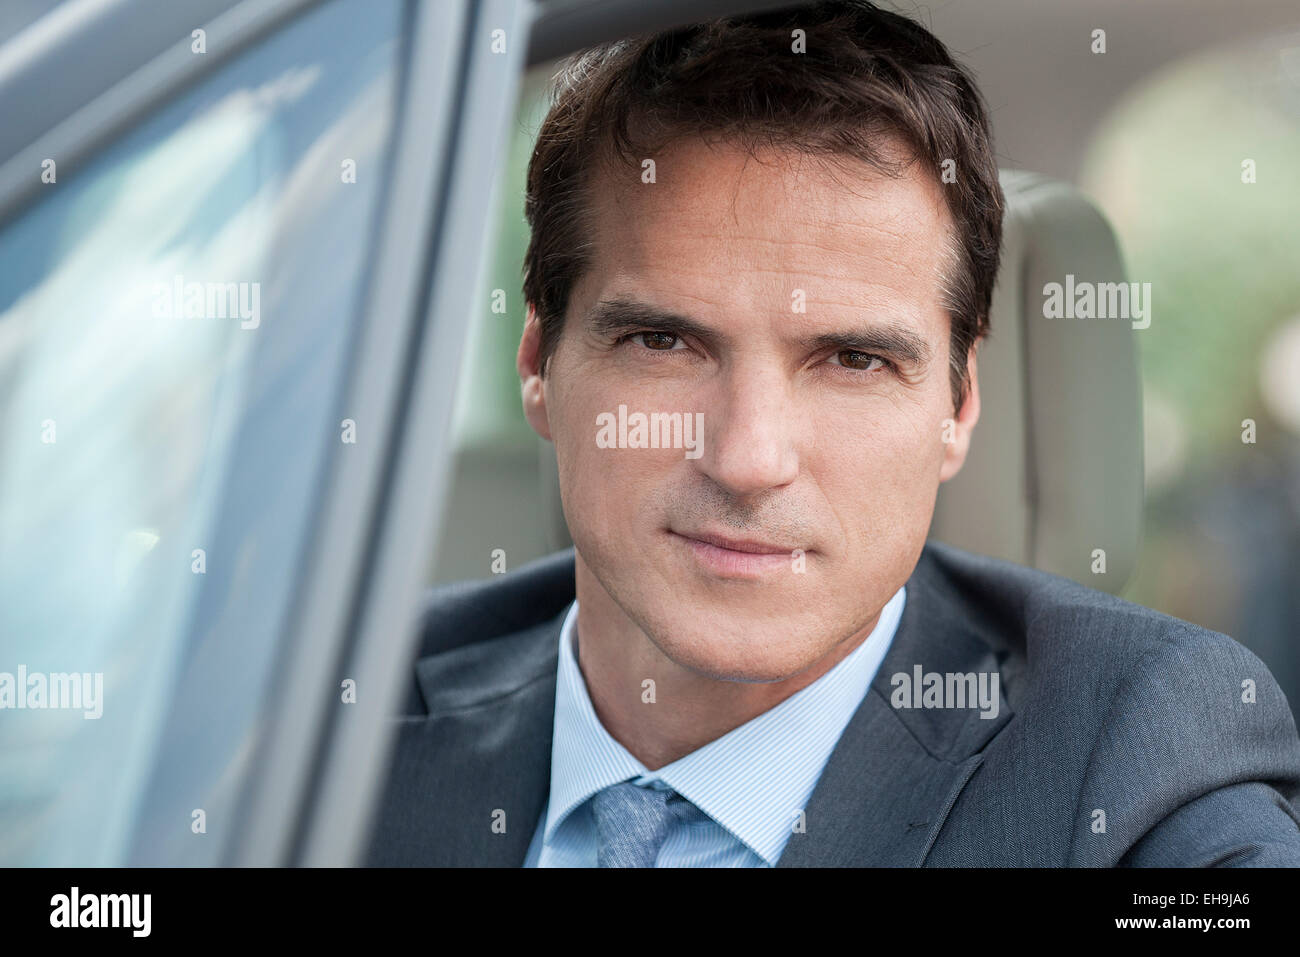 Businessman driving car, portrait Stock Photo